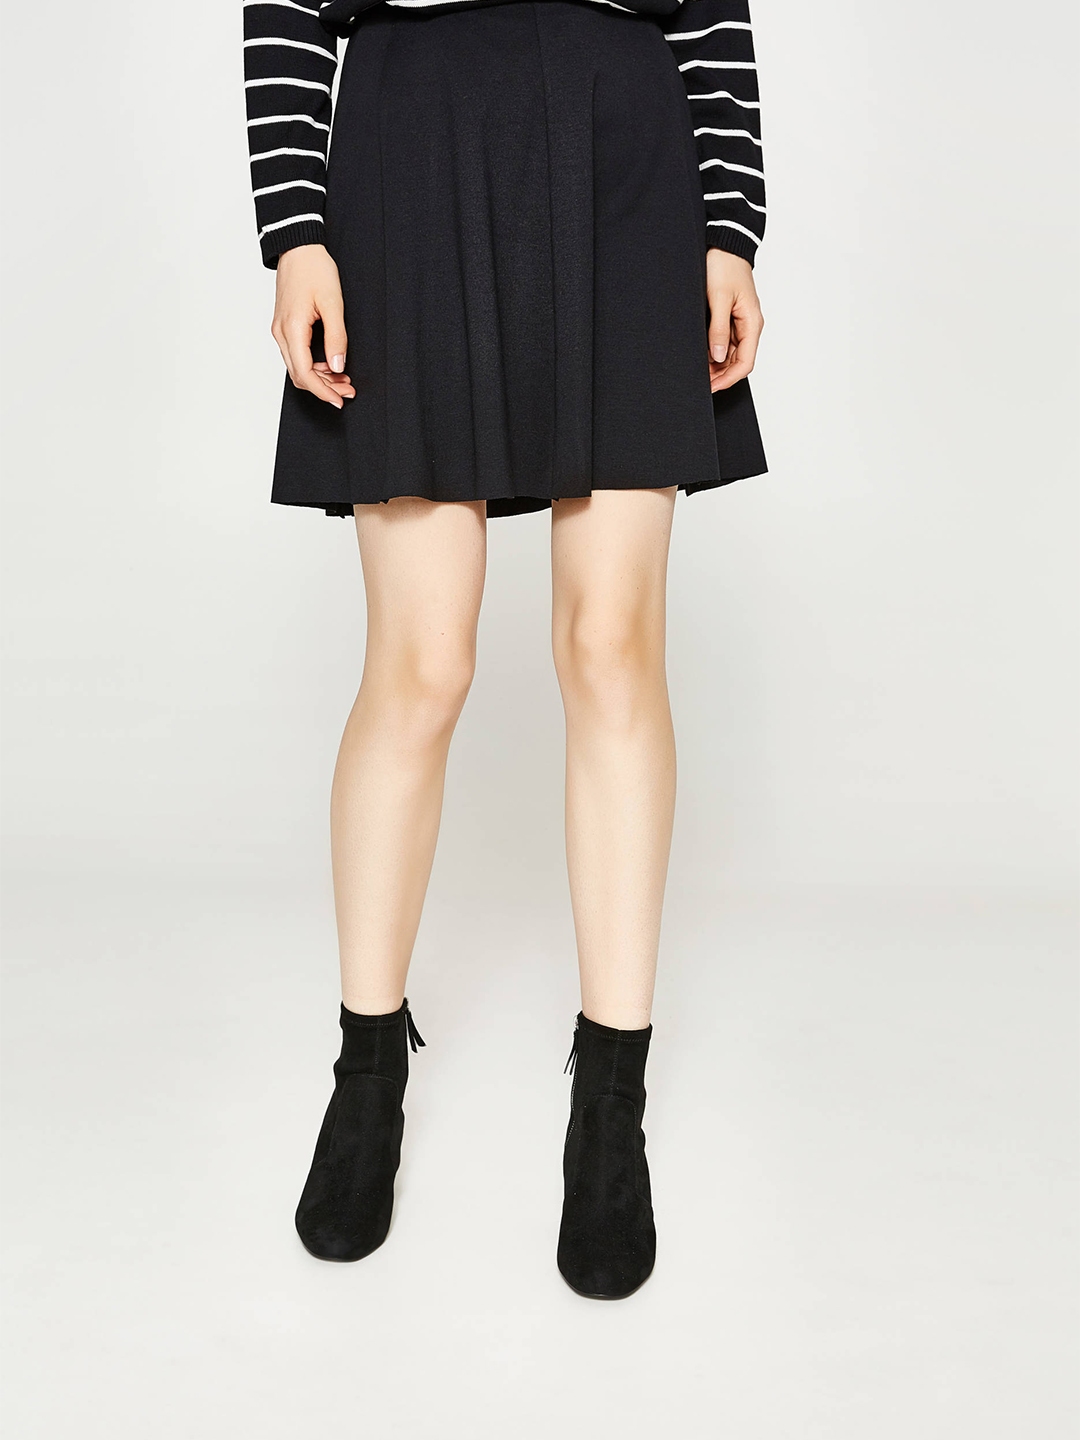 Buy OVS Black Mini Flared Skirt - Skirts for Women 2135706 | Myntra